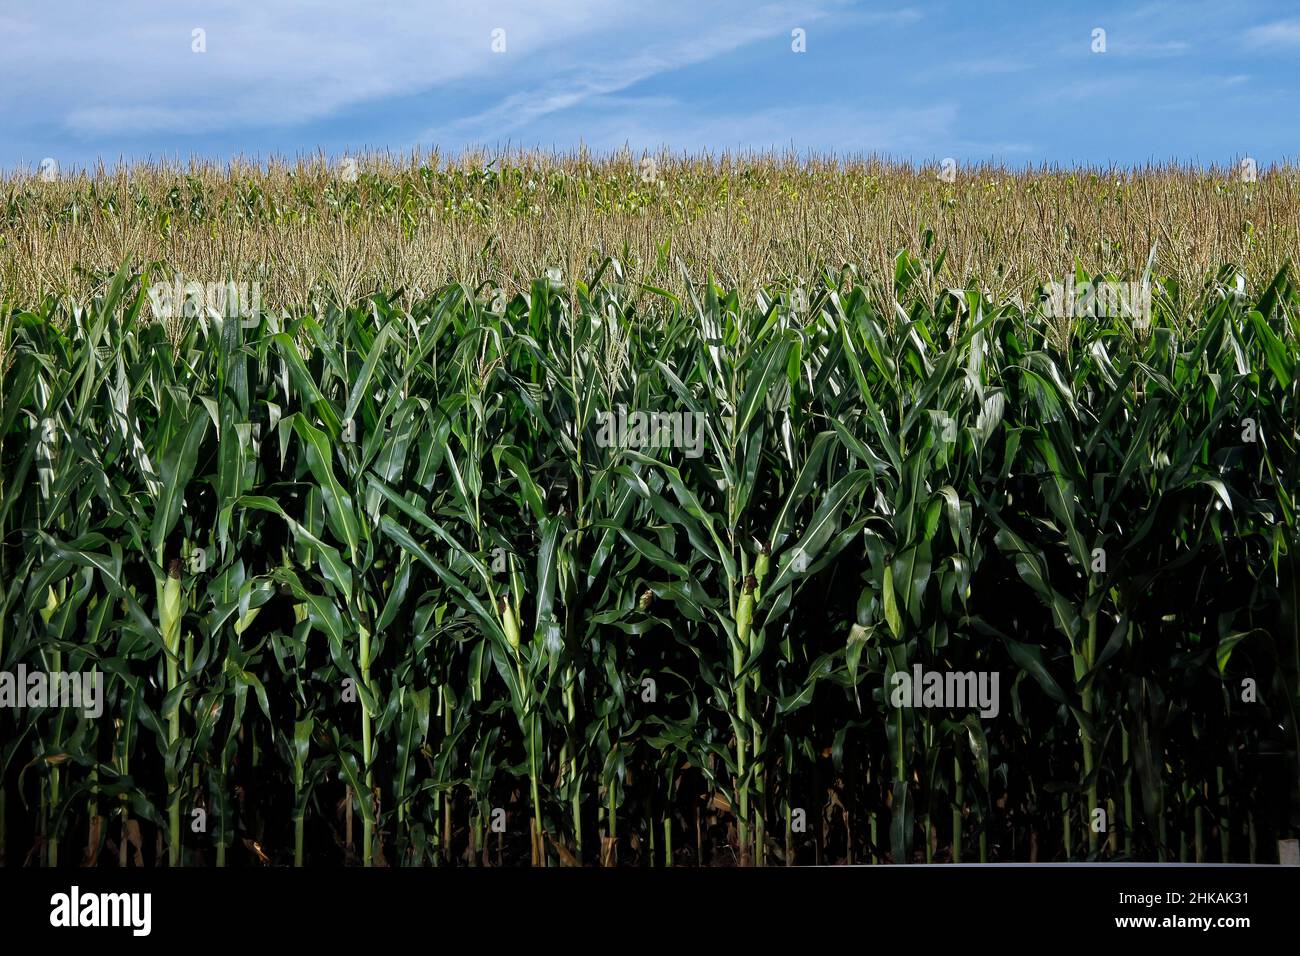 vue de jour de la récolte de maïs - concept agricole Banque D'Images